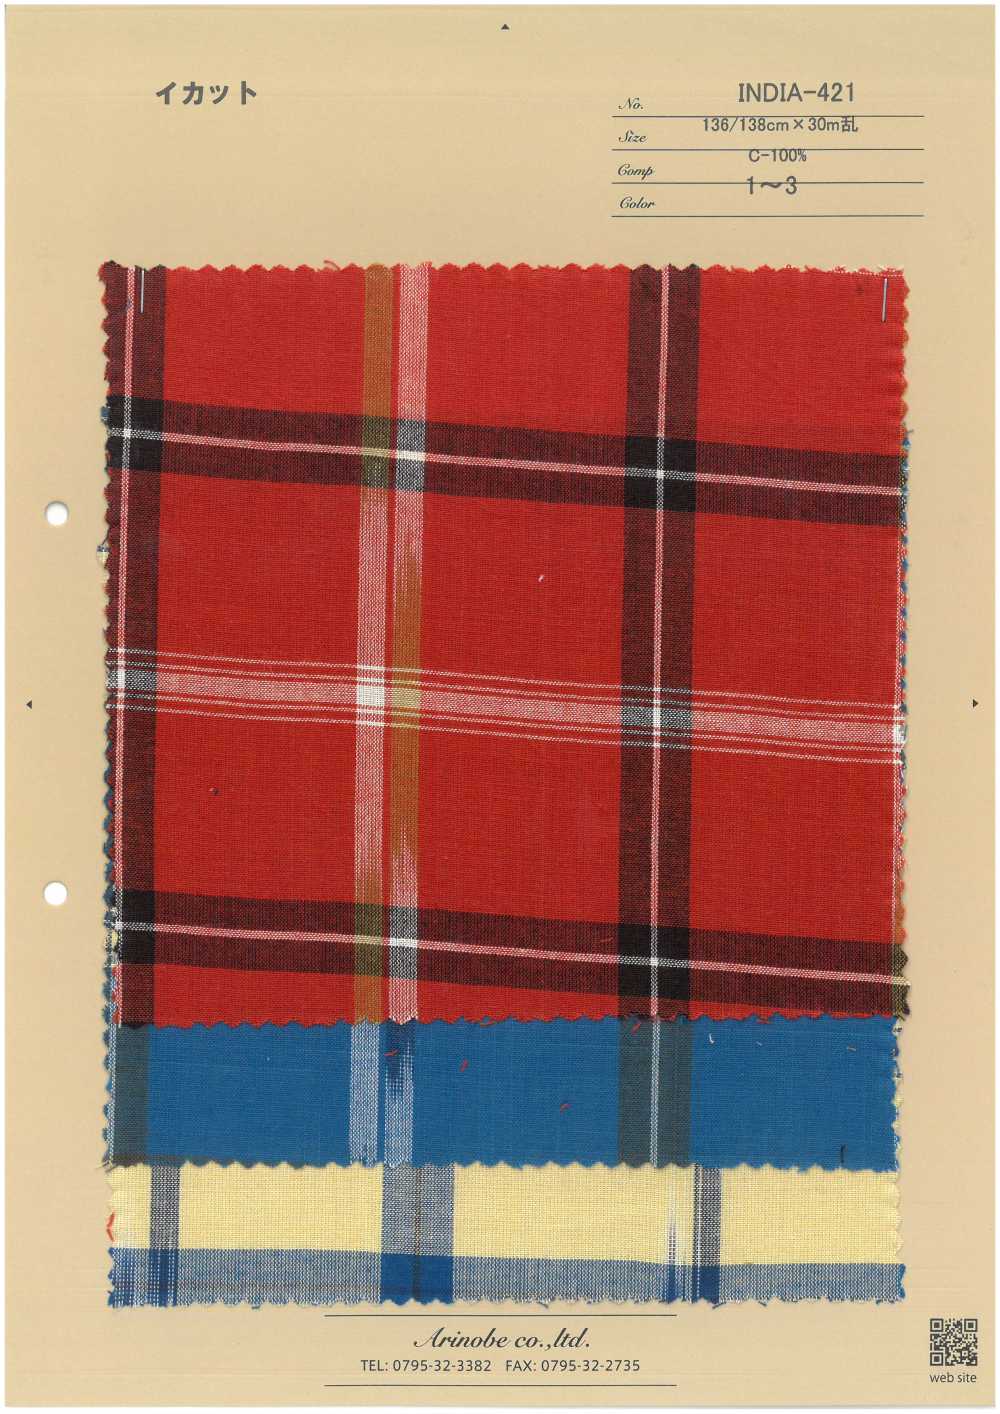 INDIA-421 Ikat[Têxtil / Tecido] ARINOBE CO., LTD.